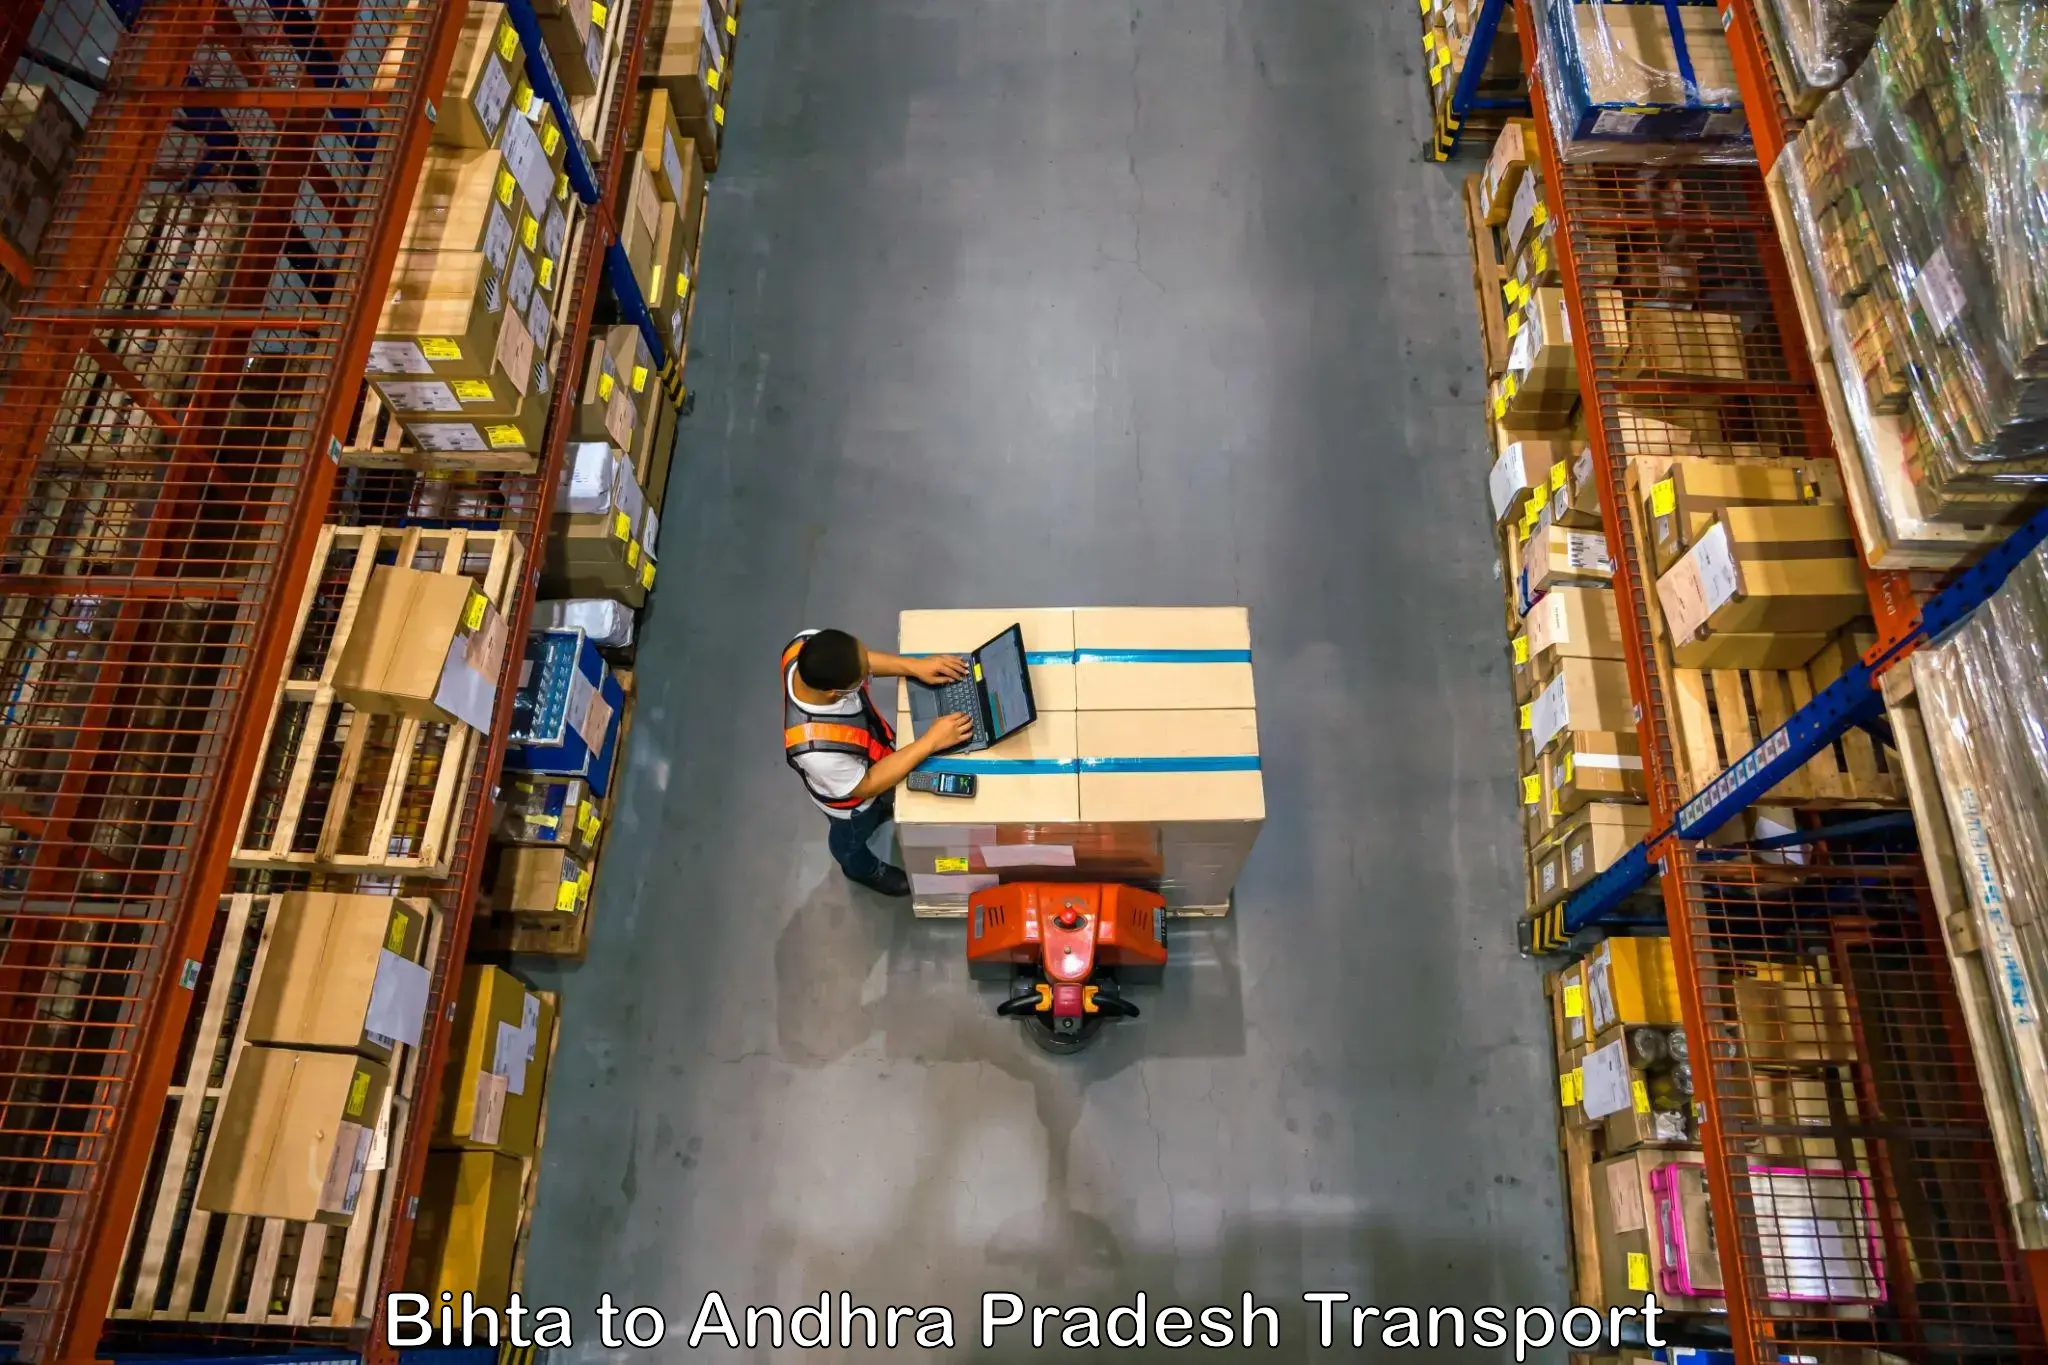 Air cargo transport services Bihta to Naupada